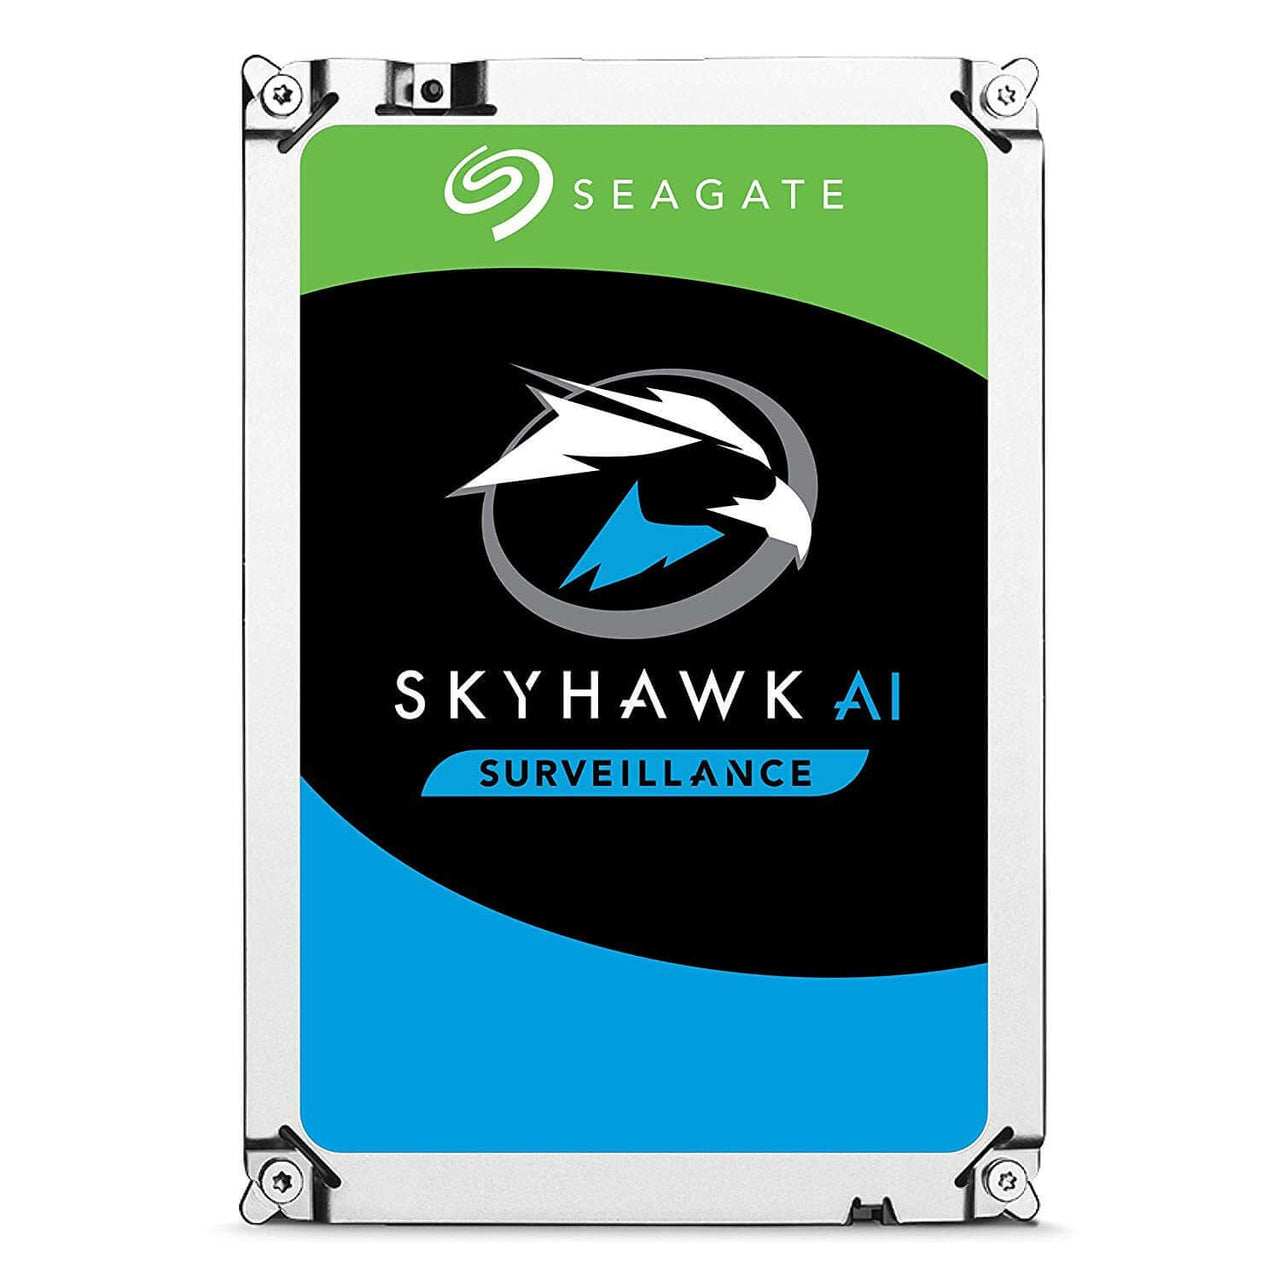 Seagate Skyhawk AI 16TB SATA Hard Drives Dubai UAE